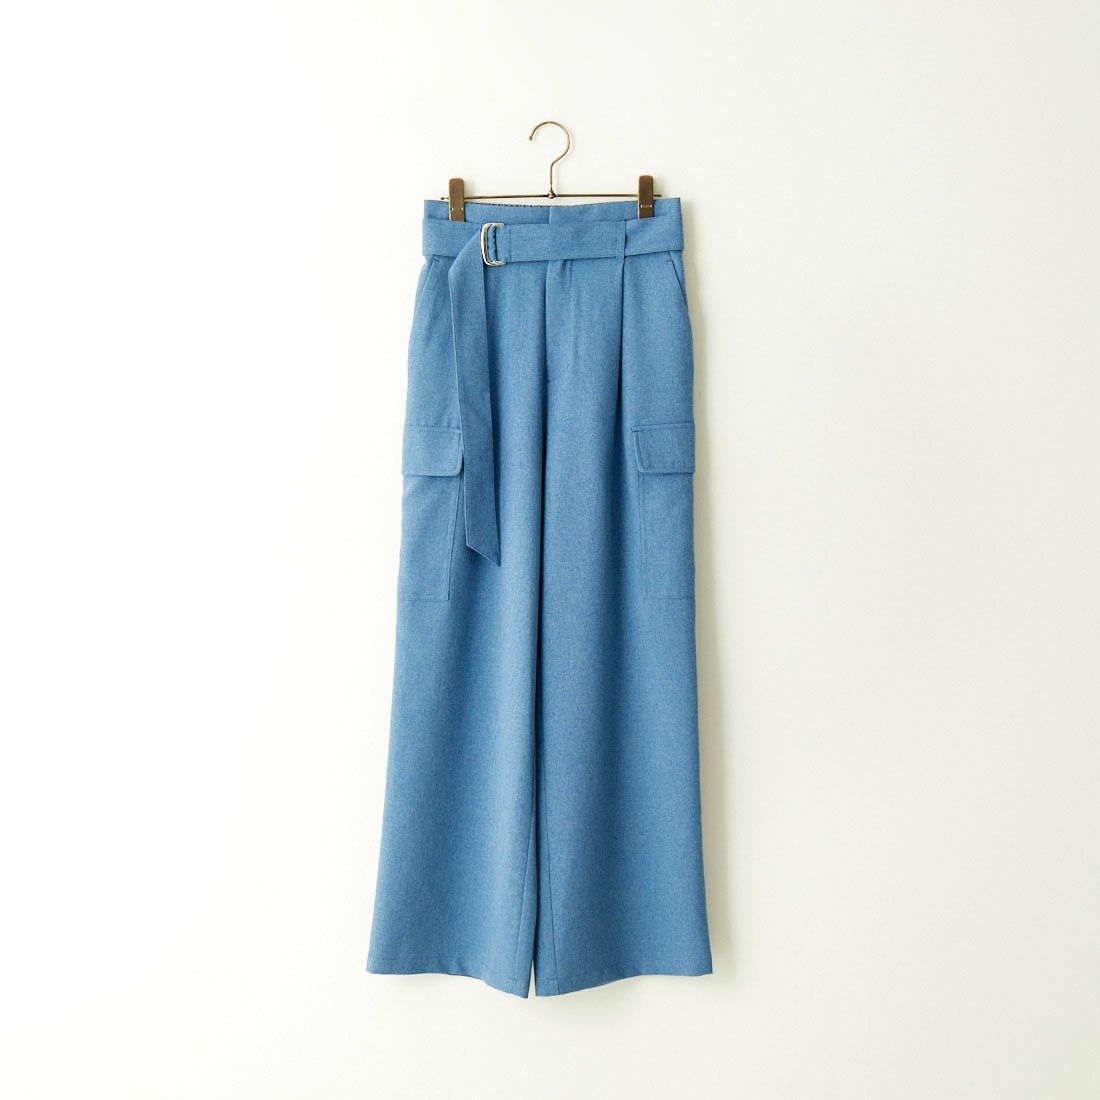 Jeans Factory Clothes [ジーンズファクトリークローズ] ベルト付き サイドカーゴポケットワイドパンツ [21241060] 070 ﾌﾞﾙｰ